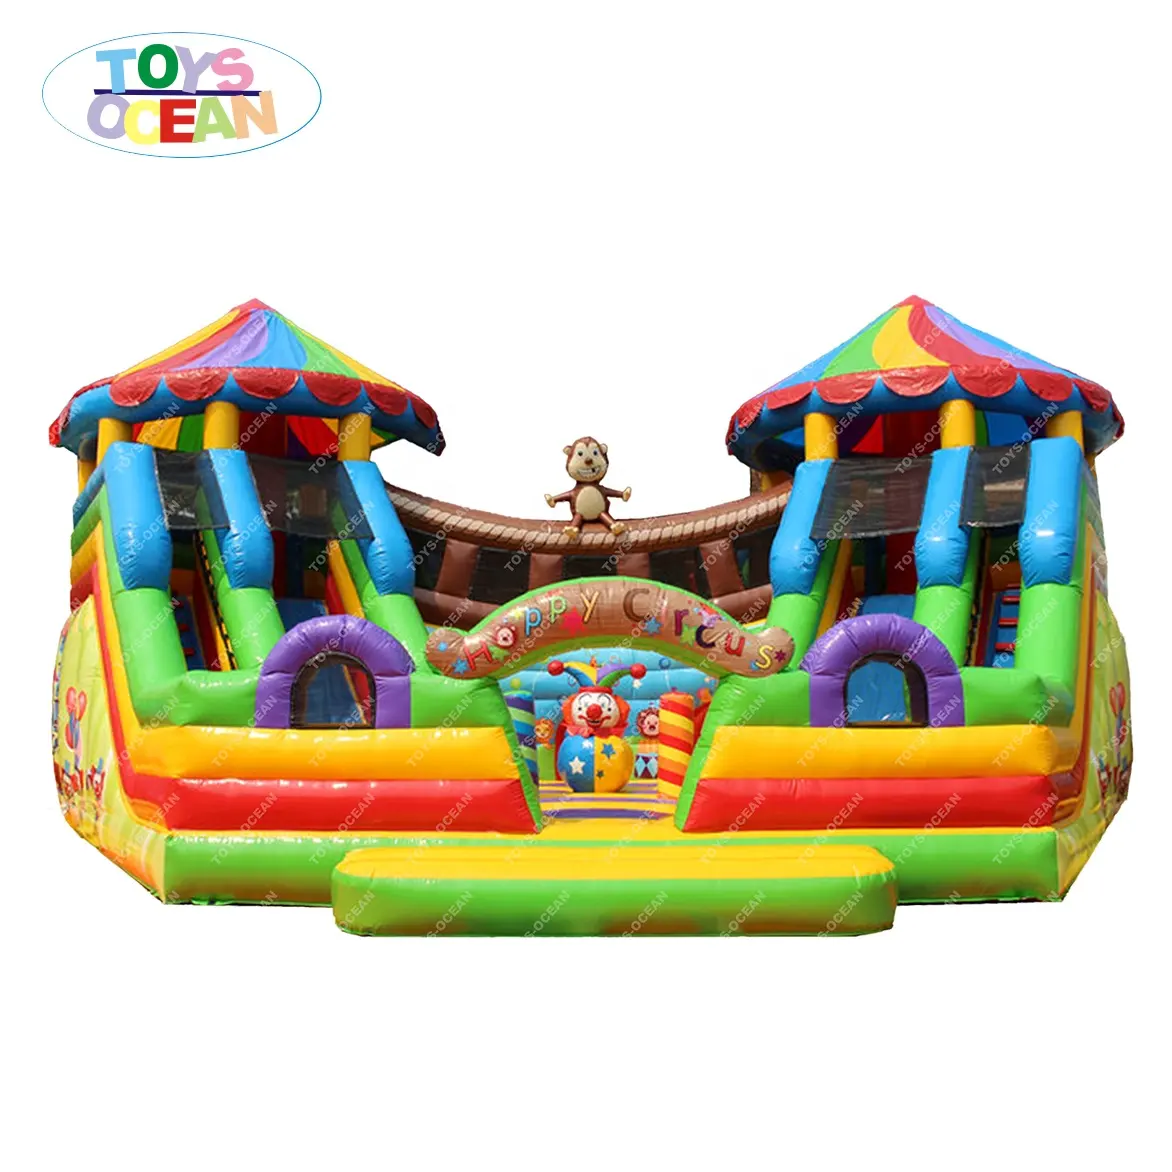 Neues Design Bounce House Sommers paß Spielzeug Kinder aufblasbare Burg aufblasbare Rutsche Trampolin mit Rutsche